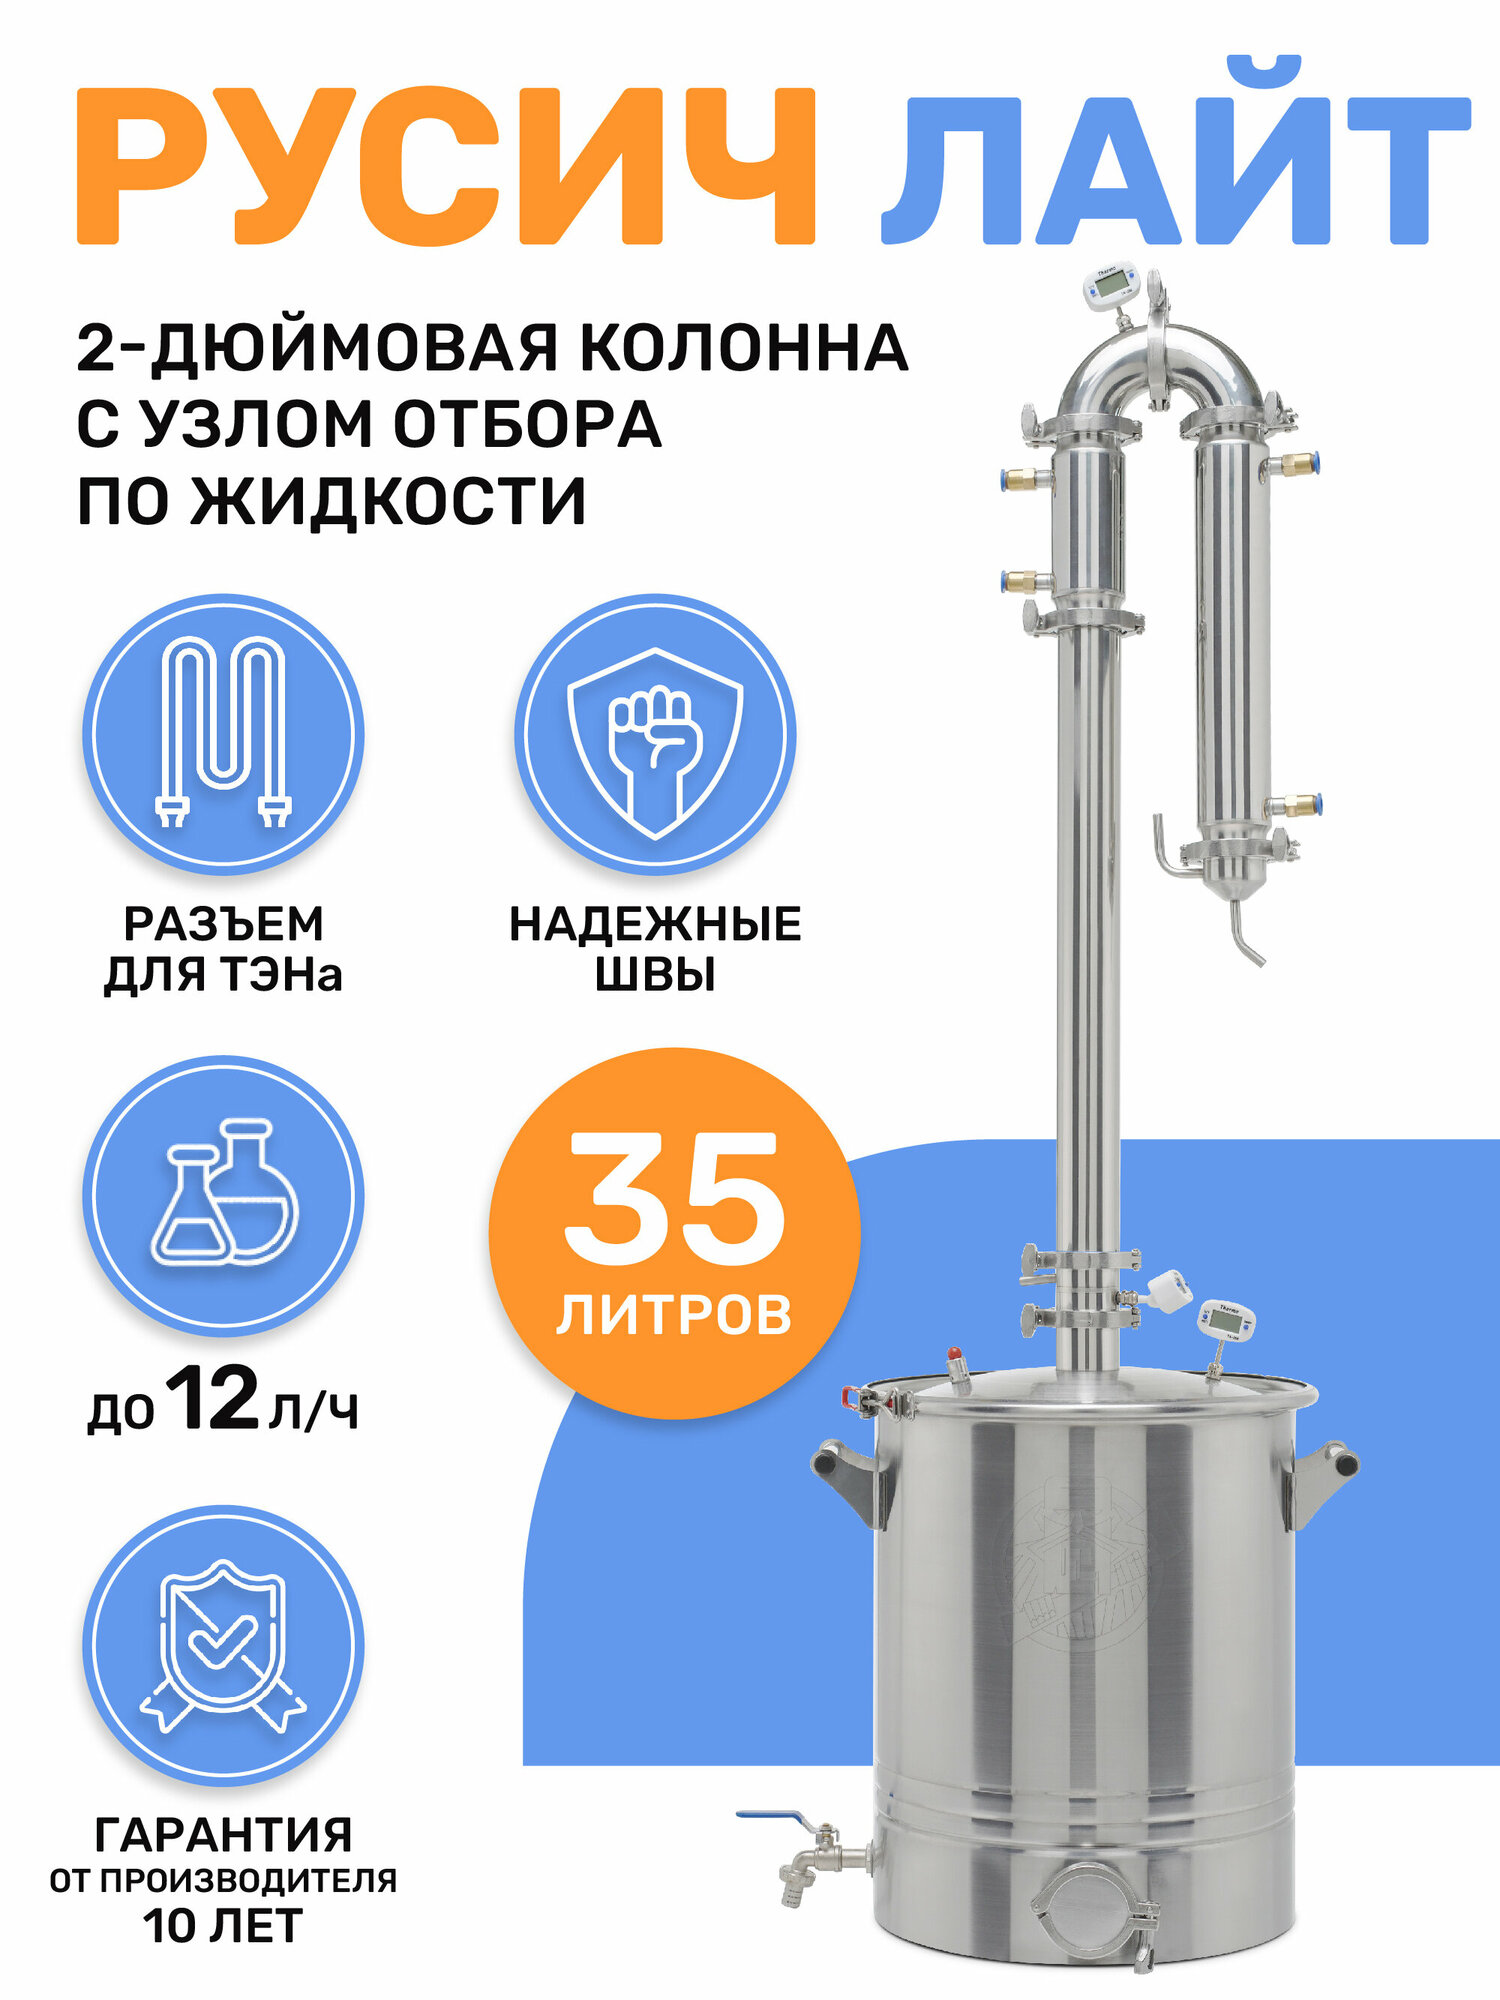 Дистиллятор колонного типа Русич Лайт на 35 литров